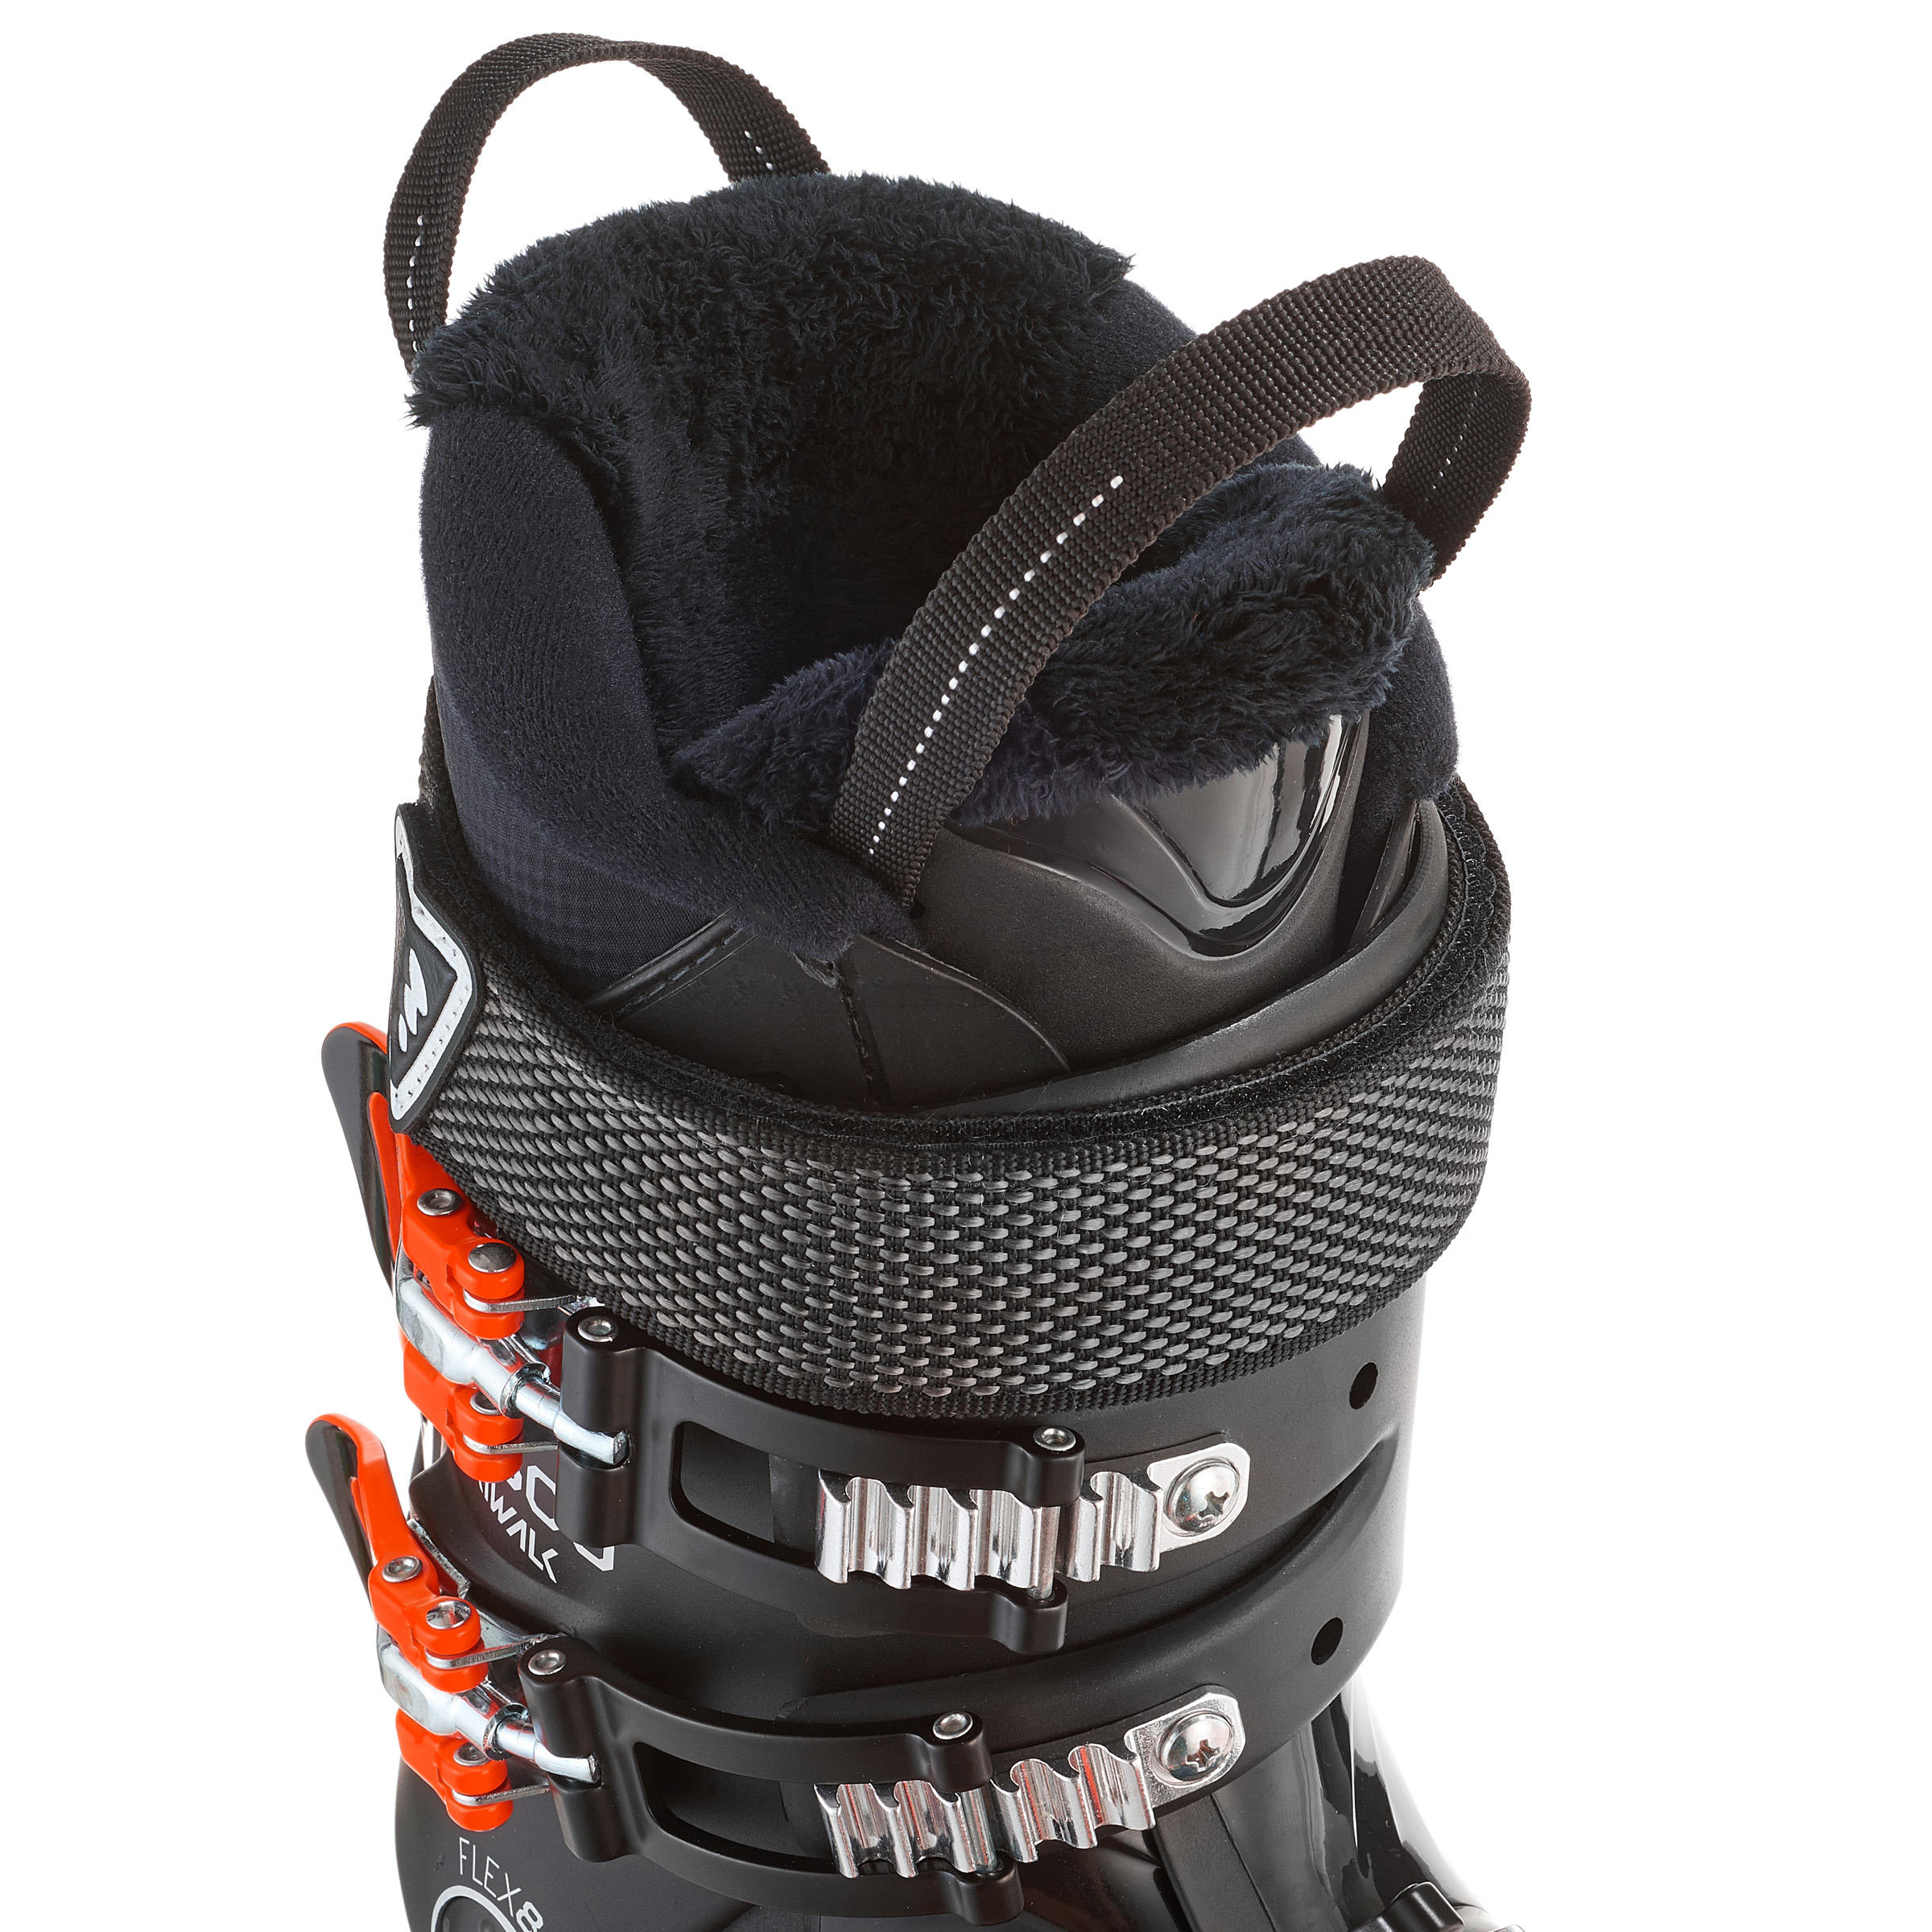 Men's Downhill Ski Boots Wid - Black 6/10